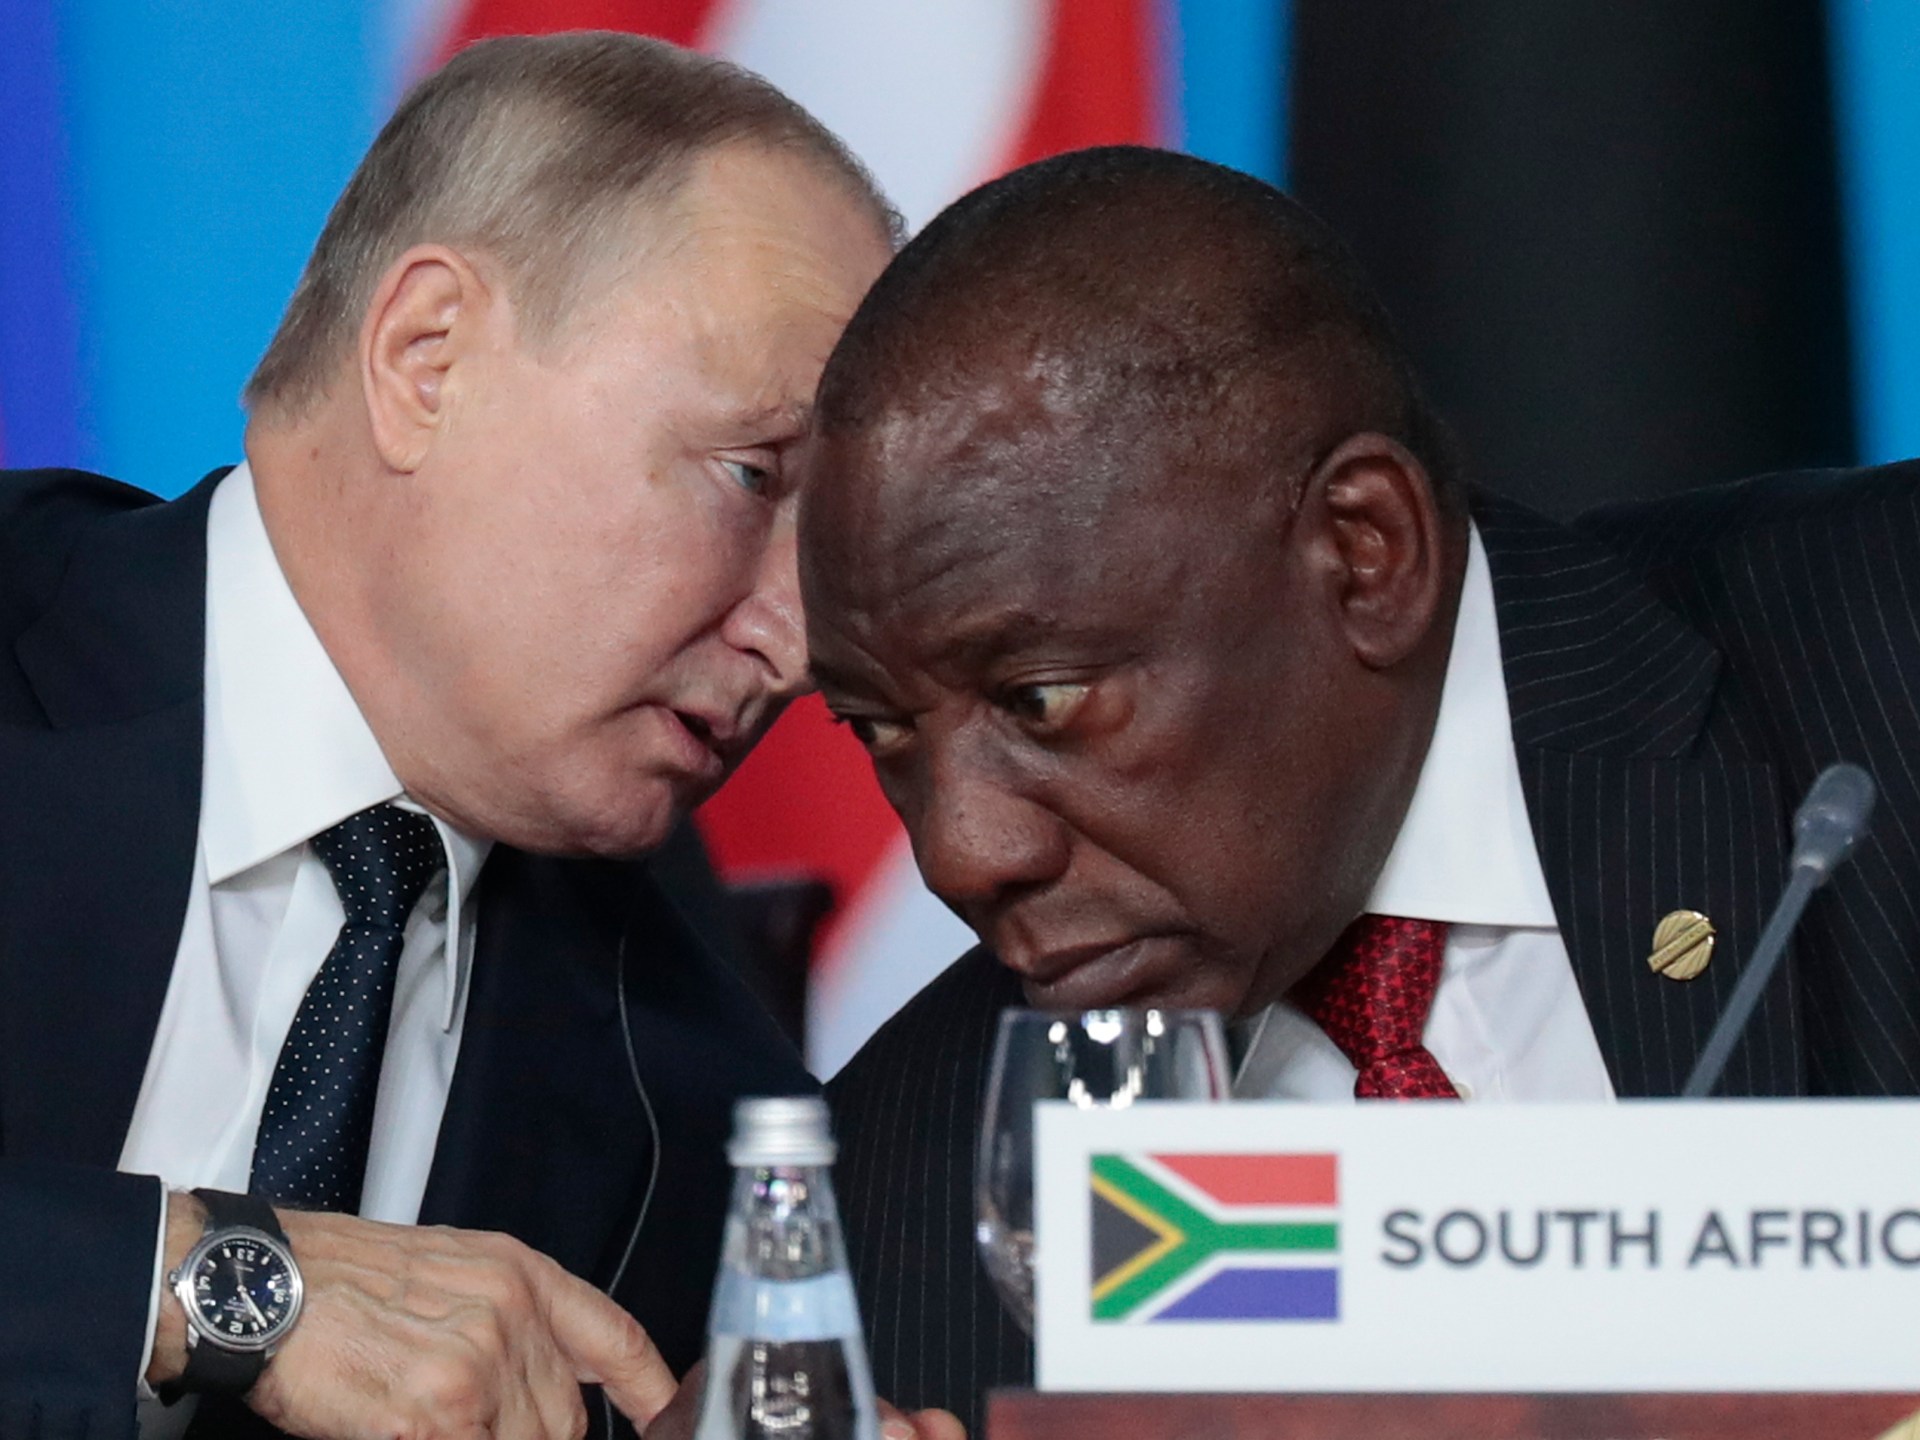 Kelompok anggota parlemen AS ingin Afrika Selatan dihukum karena hubungan Rusia |  Berita perang Rusia-Ukraina